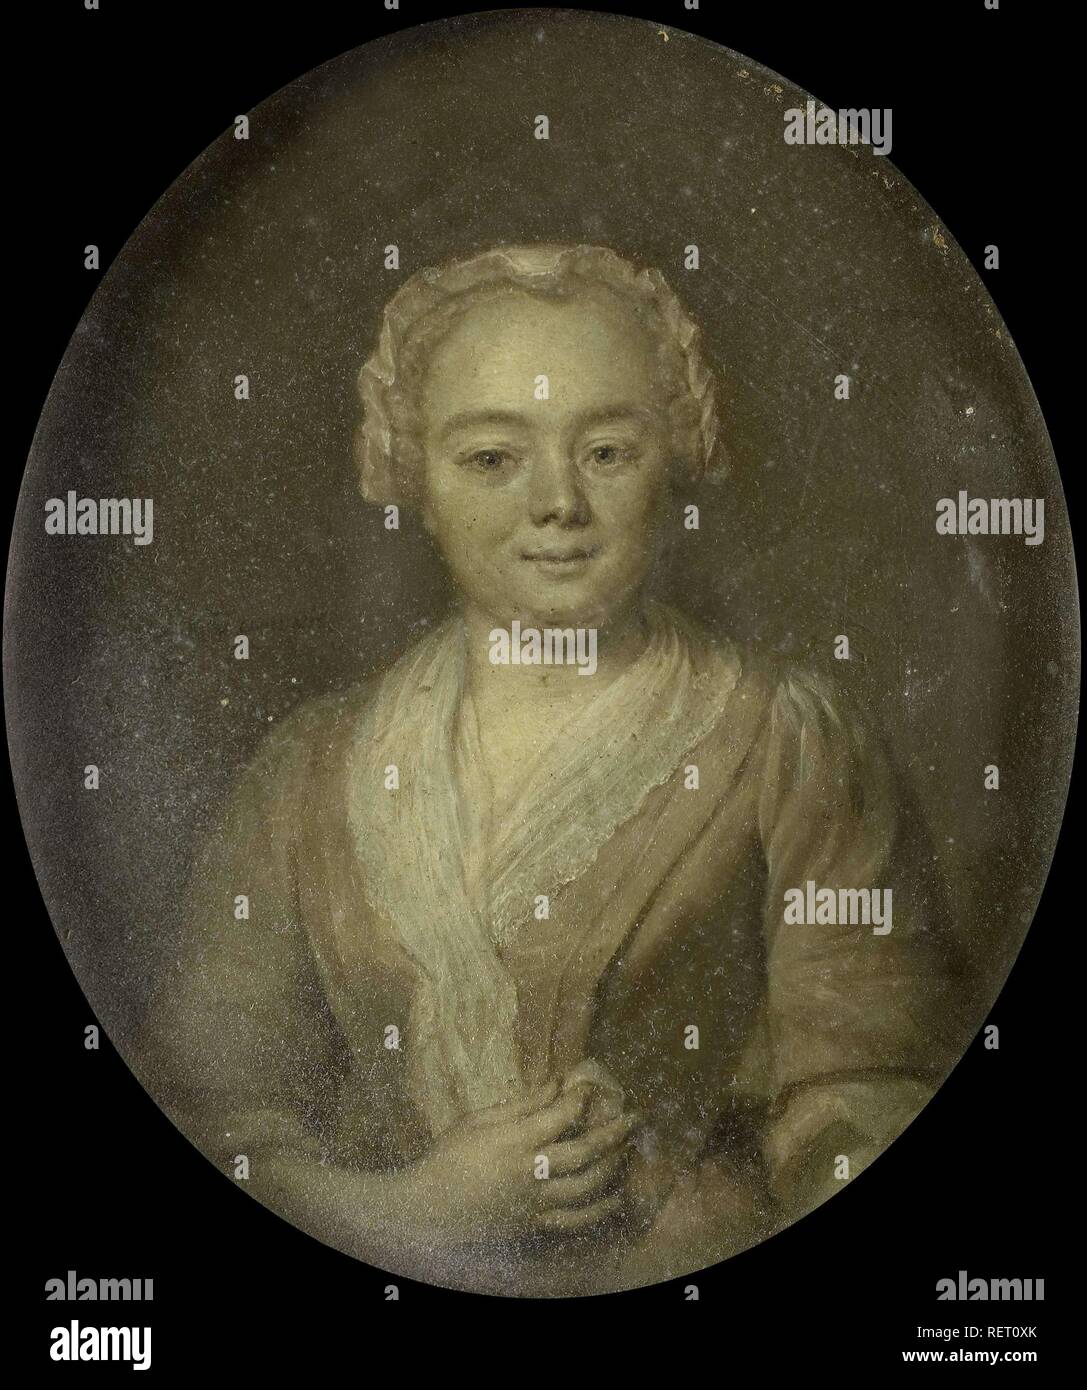 Portrait of Margaretha van Leuvenigh, Wife of Bernardus de Bosch. Dating: 1743. Measurements: h 11 cm × w 9.5 cm; h 20.5 cm × w 17.7 cm × d 2 cm. Museum: Rijksmuseum, Amsterdam. Author: Jan Maurits Quinkhard. Stock Photo